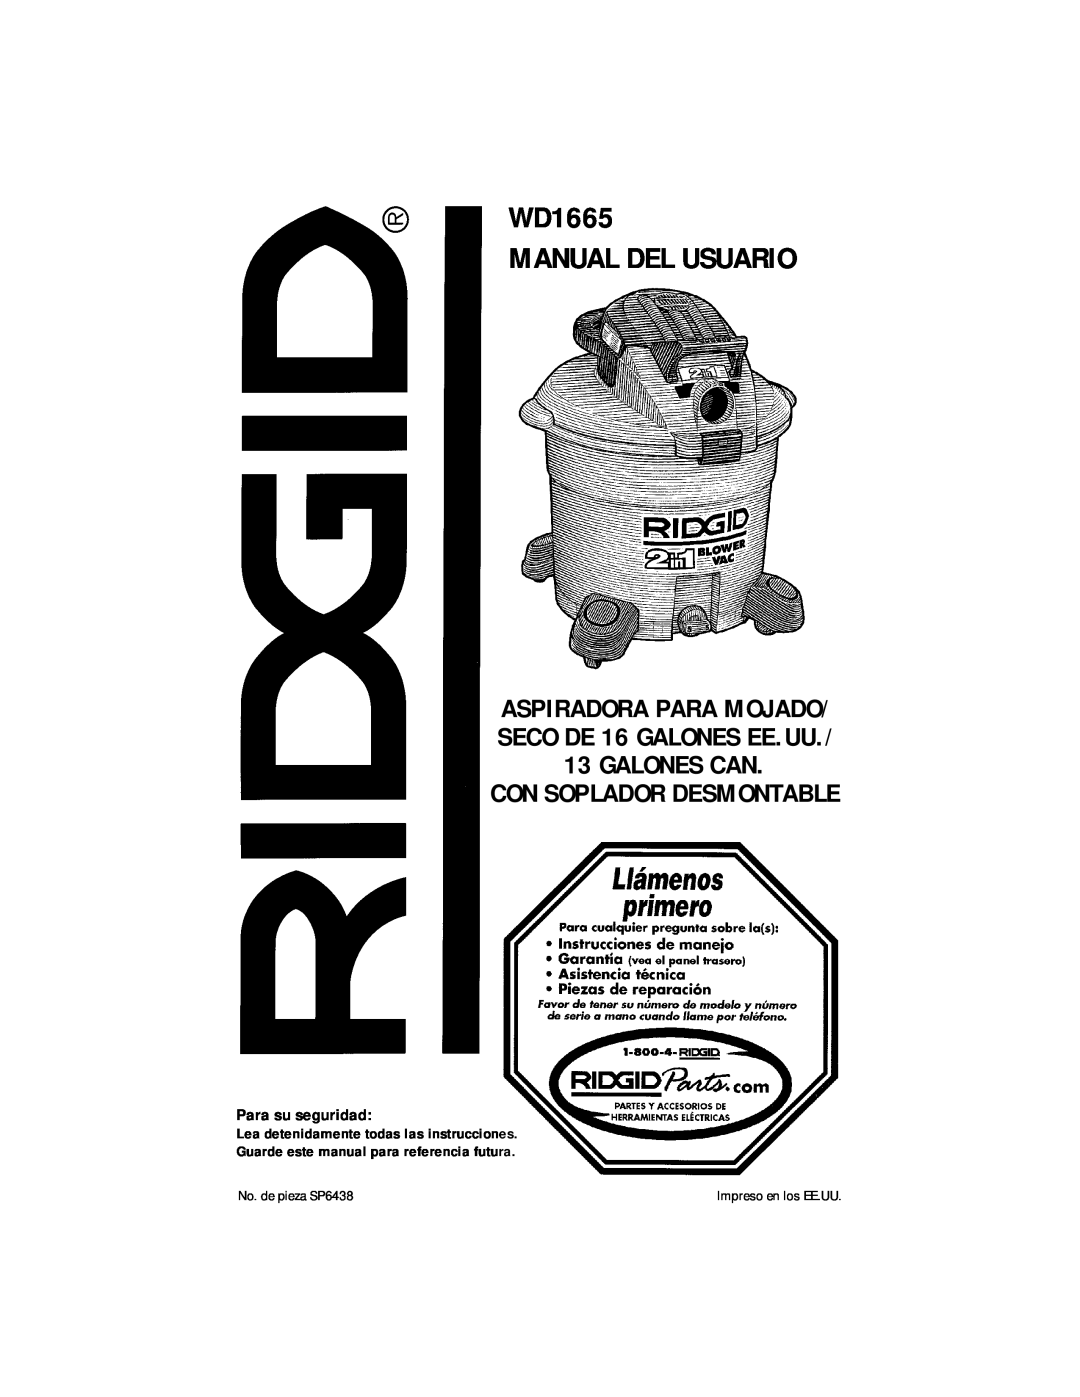 RIDGID manual WD1665 MANUAL DEL USUARIO, Con Soplador Desmontable, Para su seguridad, Impreso en los EE.UU 